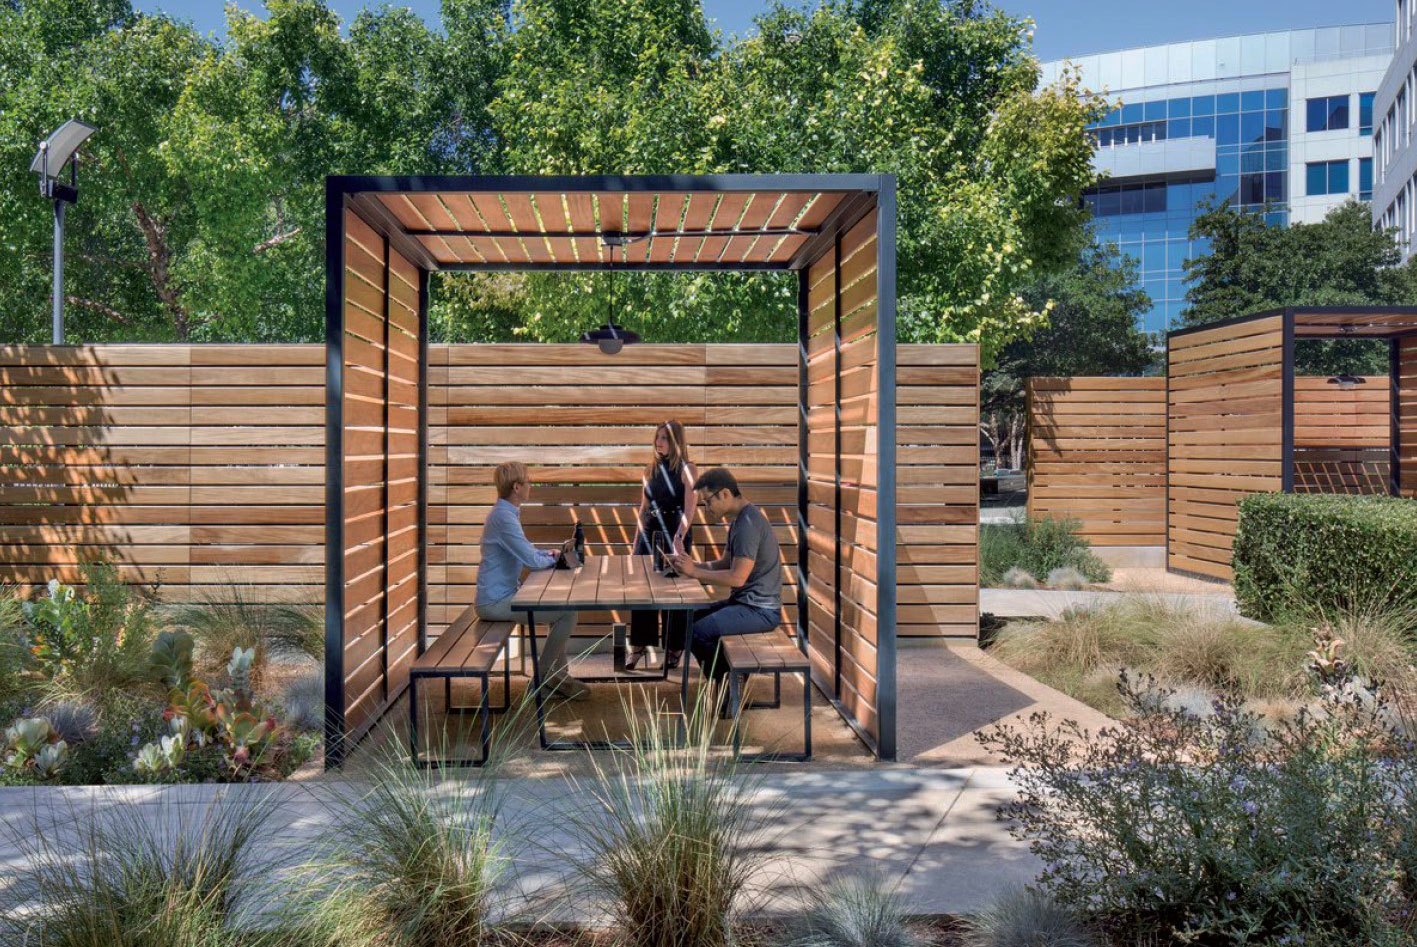 workplace design trends - outdoor amenities